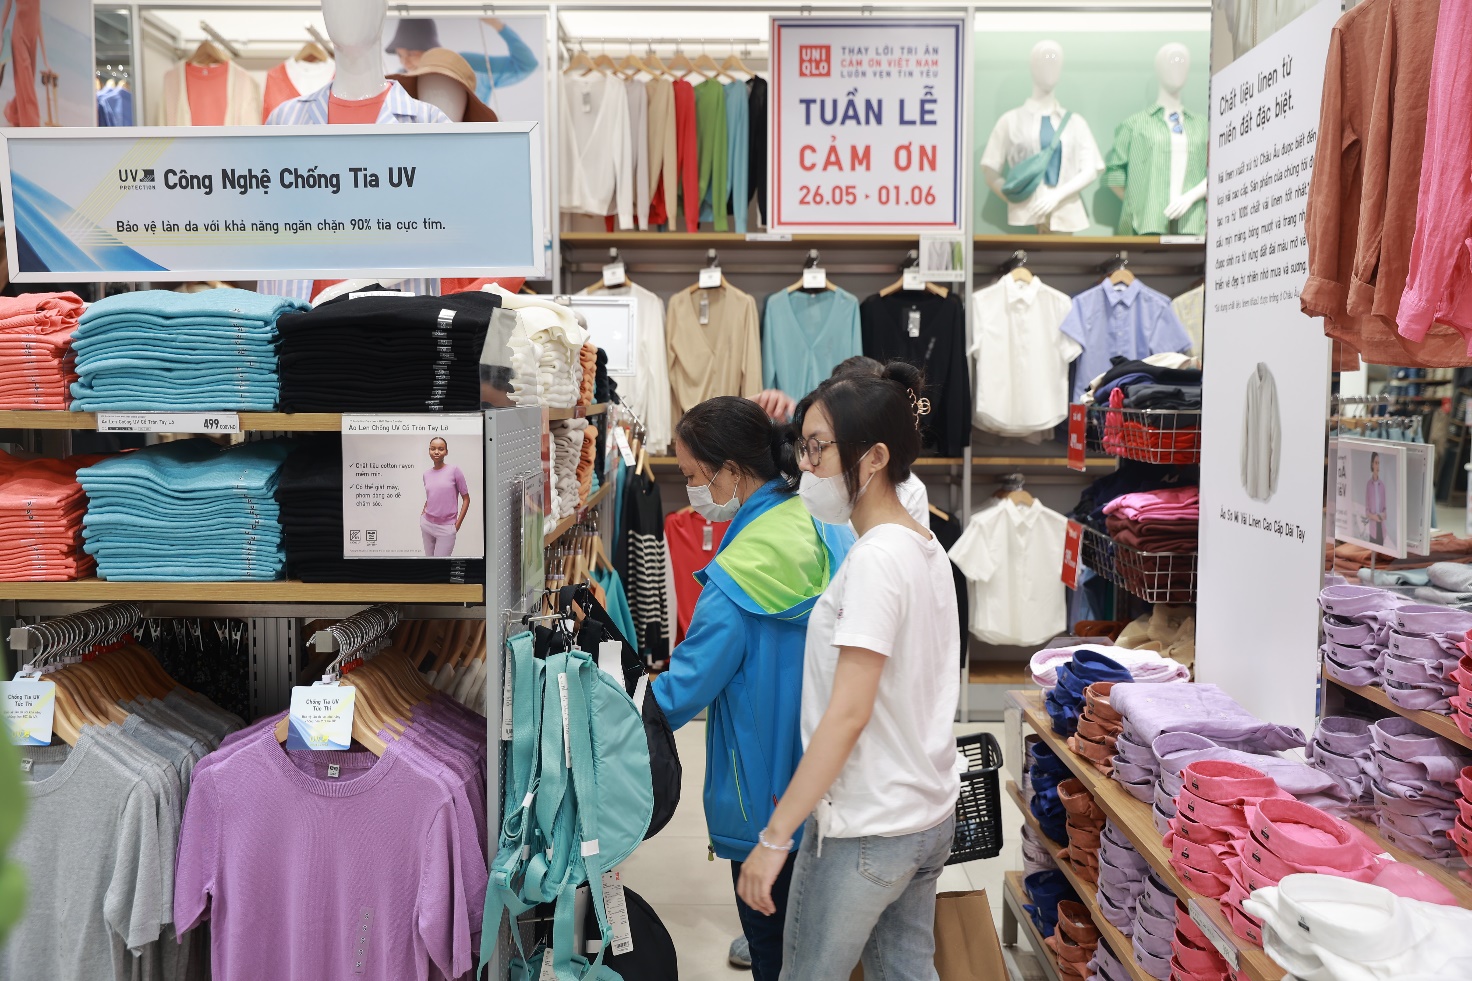 Khách hàng đổ bộ mua sắm tại cửa hàng UNIQLO ngay trong ngày đầu tiên của Tuần Lễ Cảm Ơn 26/5 - 1/6 - Ảnh 3.